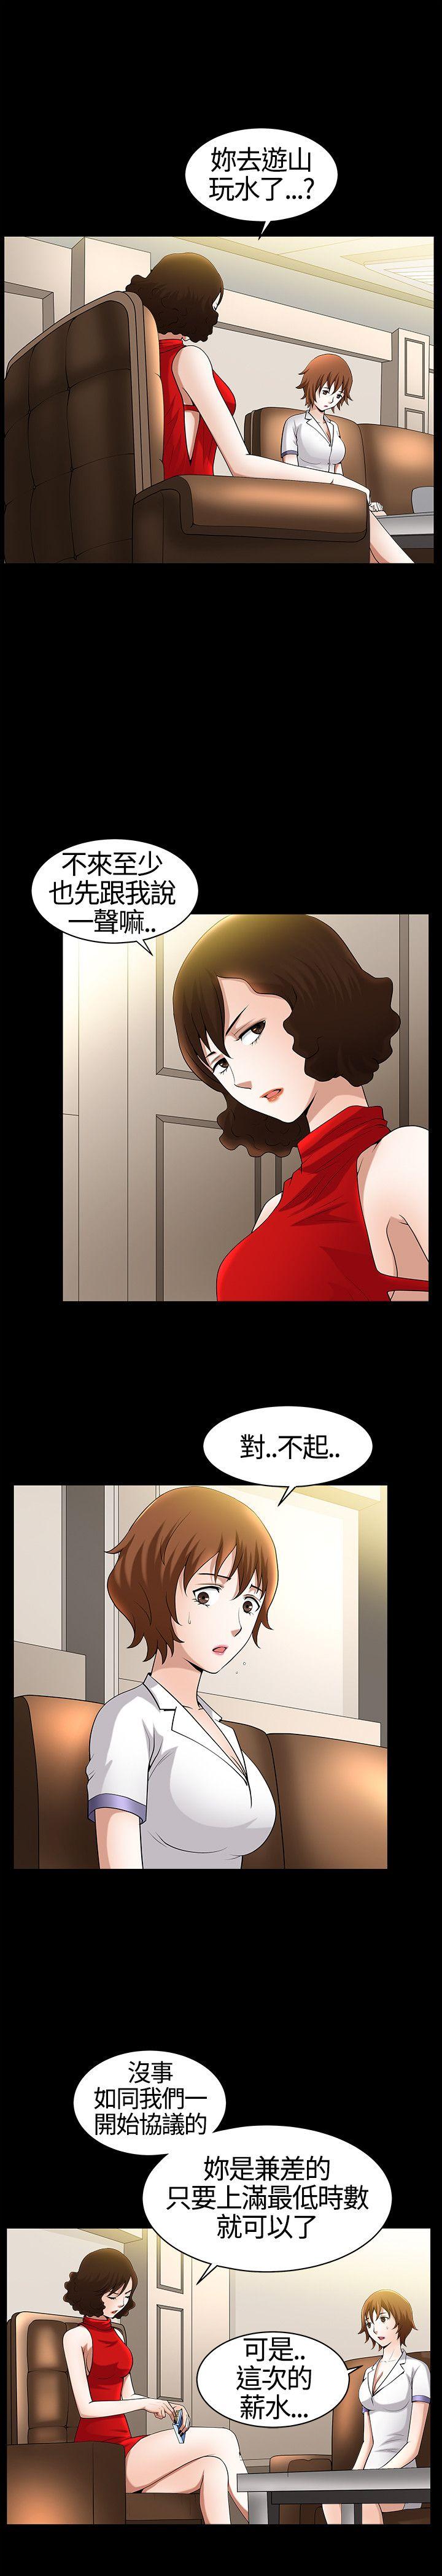 韩国污漫画 人妻性解放3:粗糙的手 第16话 29